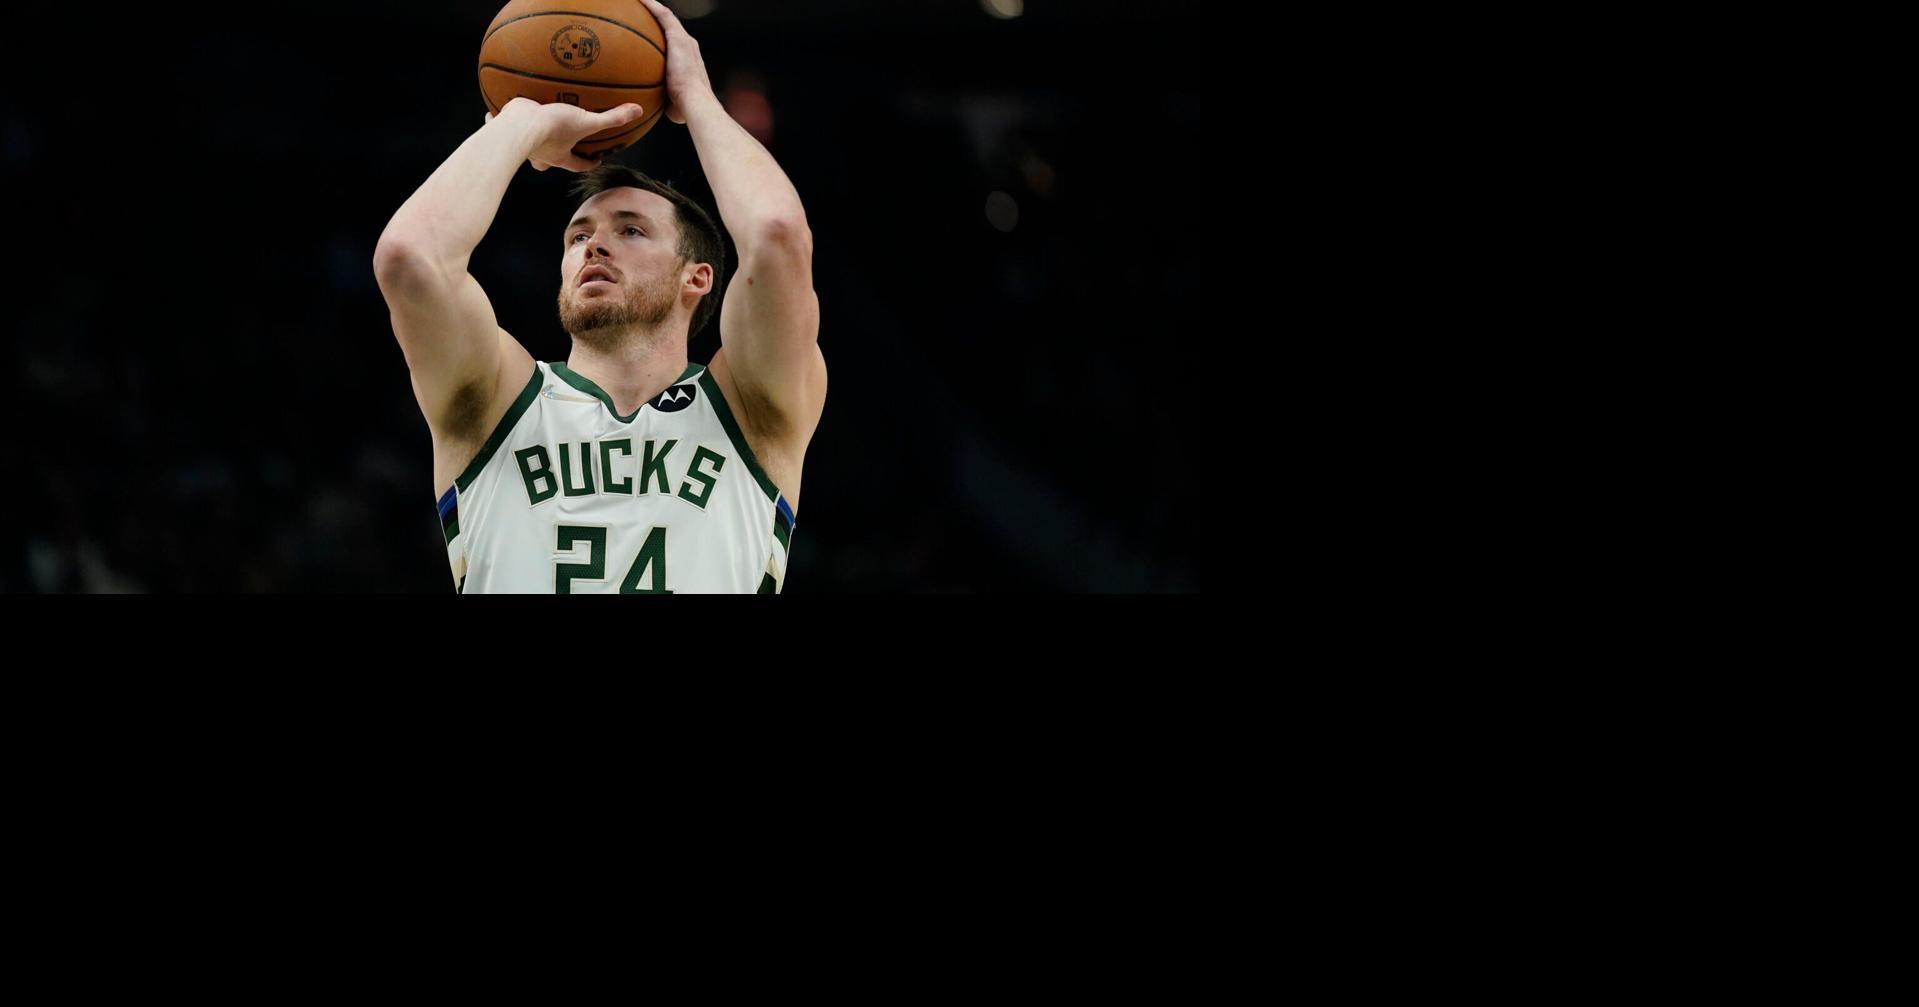 Kyle Korver knocked down shots, Celtics in Game 2 - The Boston Globe